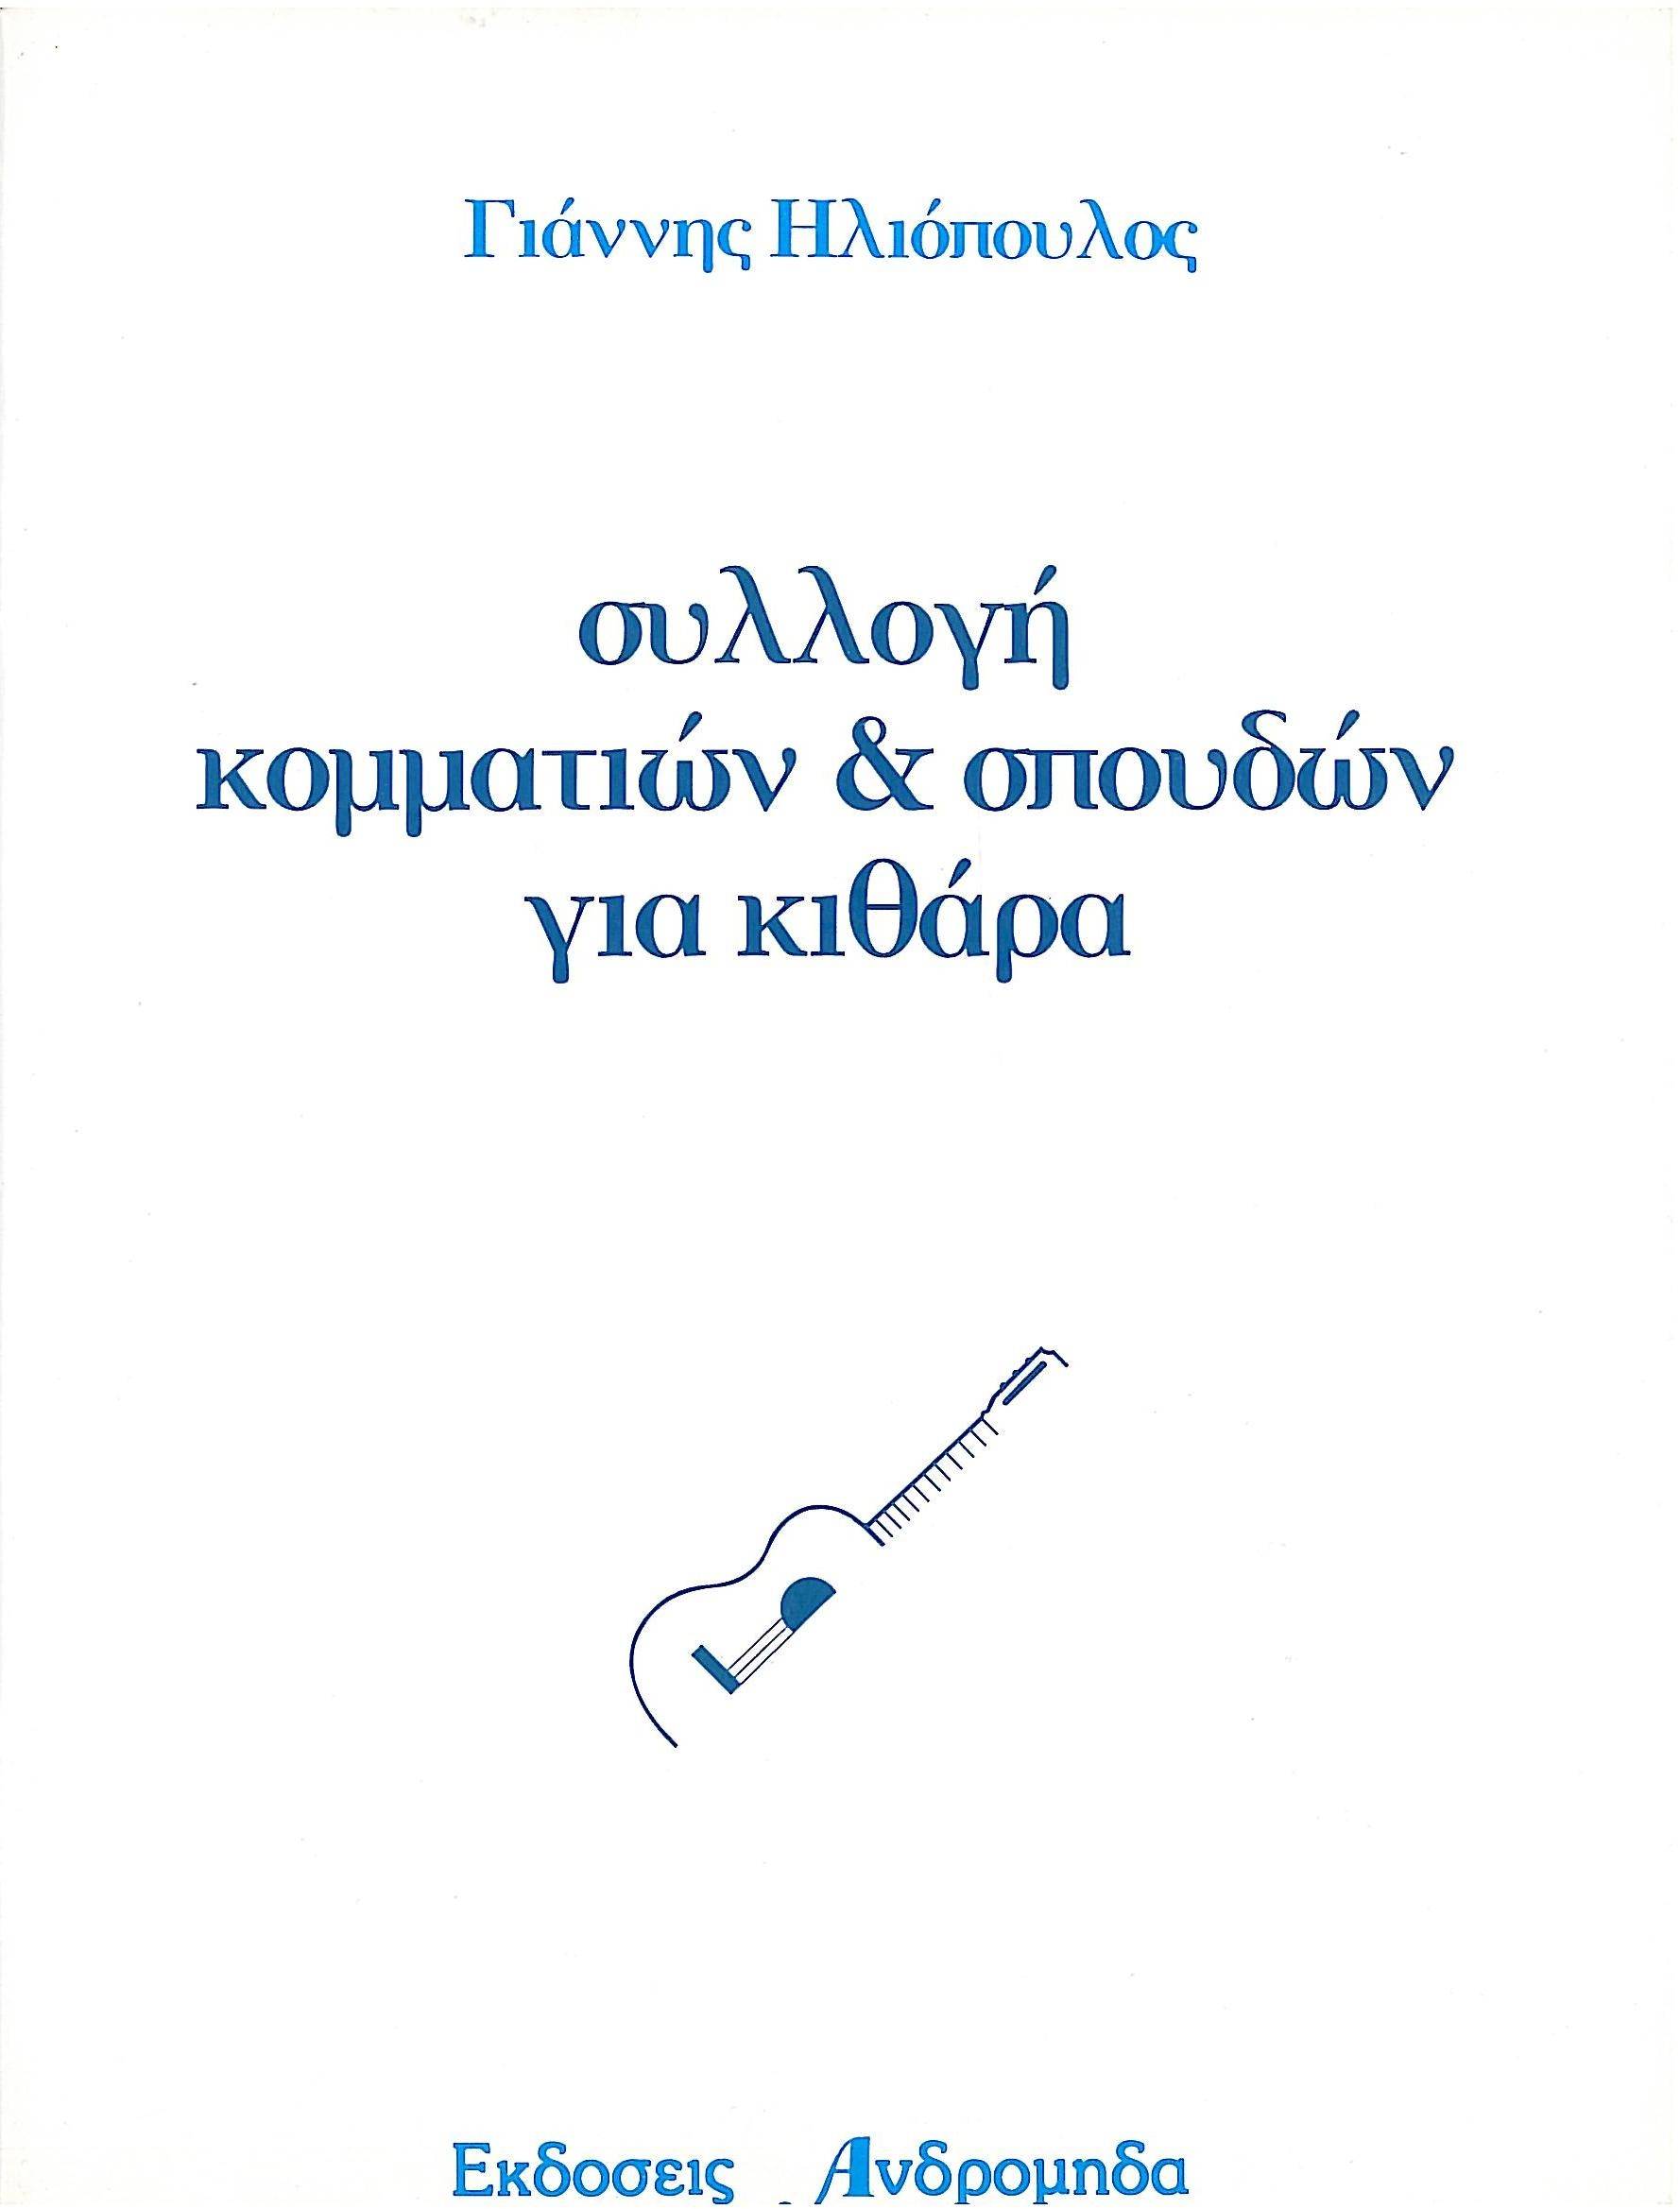 Ηλιόπουλος - Συλλογή Κομματιών και Σπουδών για Κιθάρα